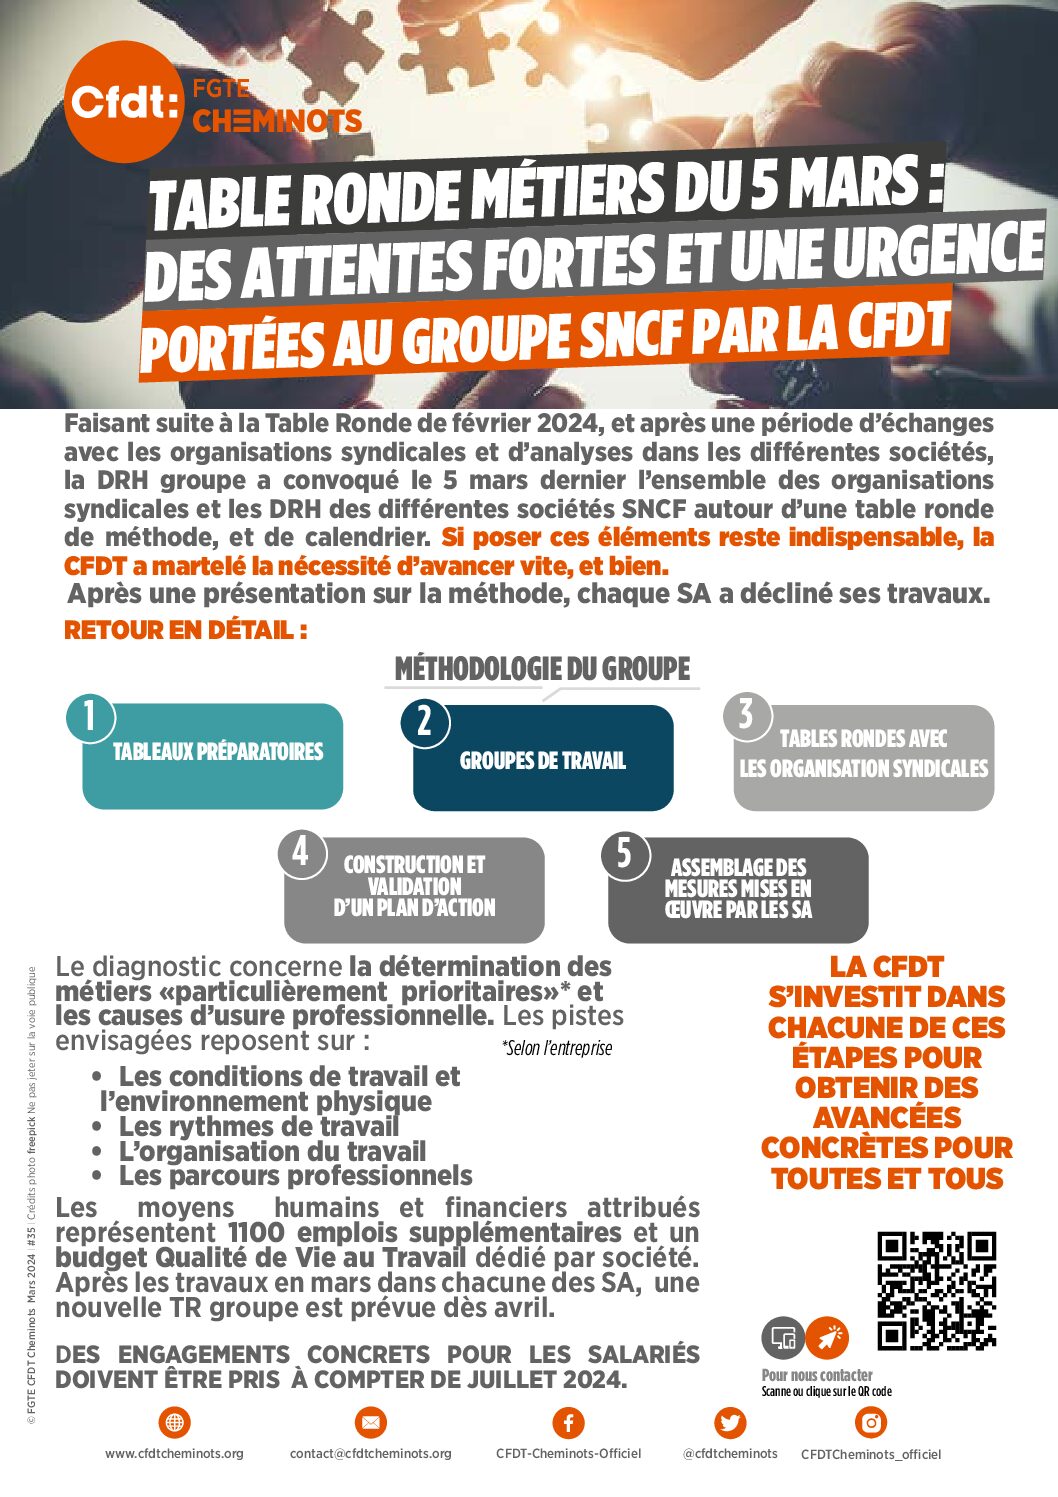 Table Ronde Métiers du 5 mars: des attentes fortes et une urgence portées au groupe SNCF par la CFDT